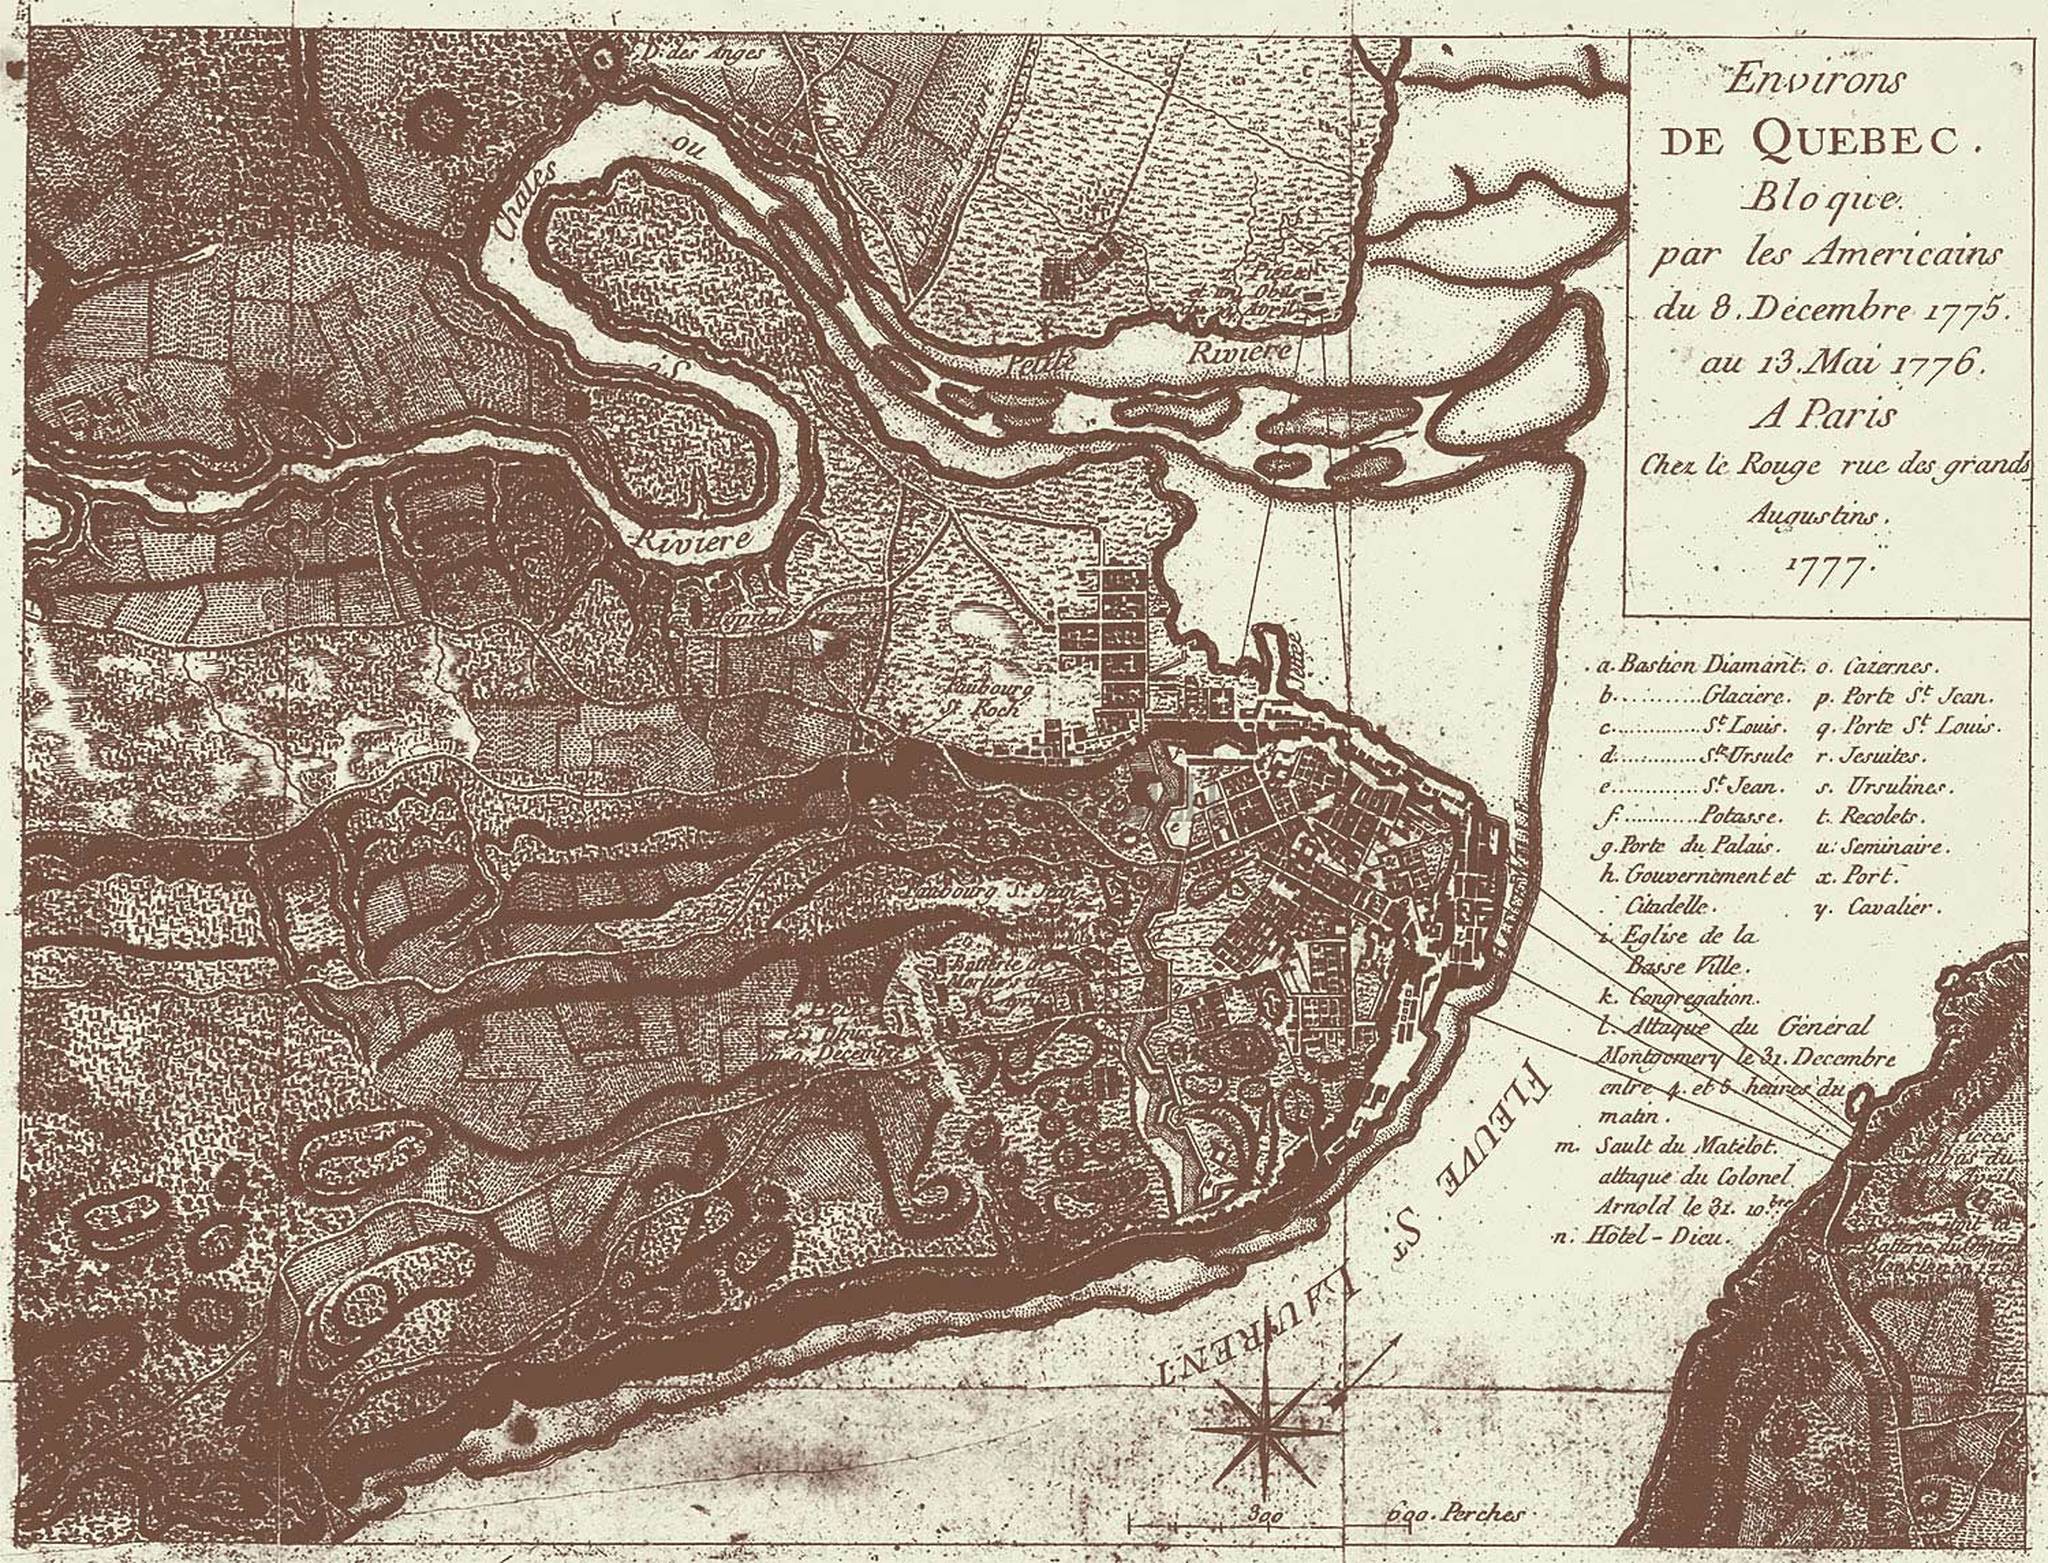 Au Jardin Luxe Environs De Quebec Bloque Par Les Americains Du 8 Decembre 1775 Au 13 Mai 1776 Art Print